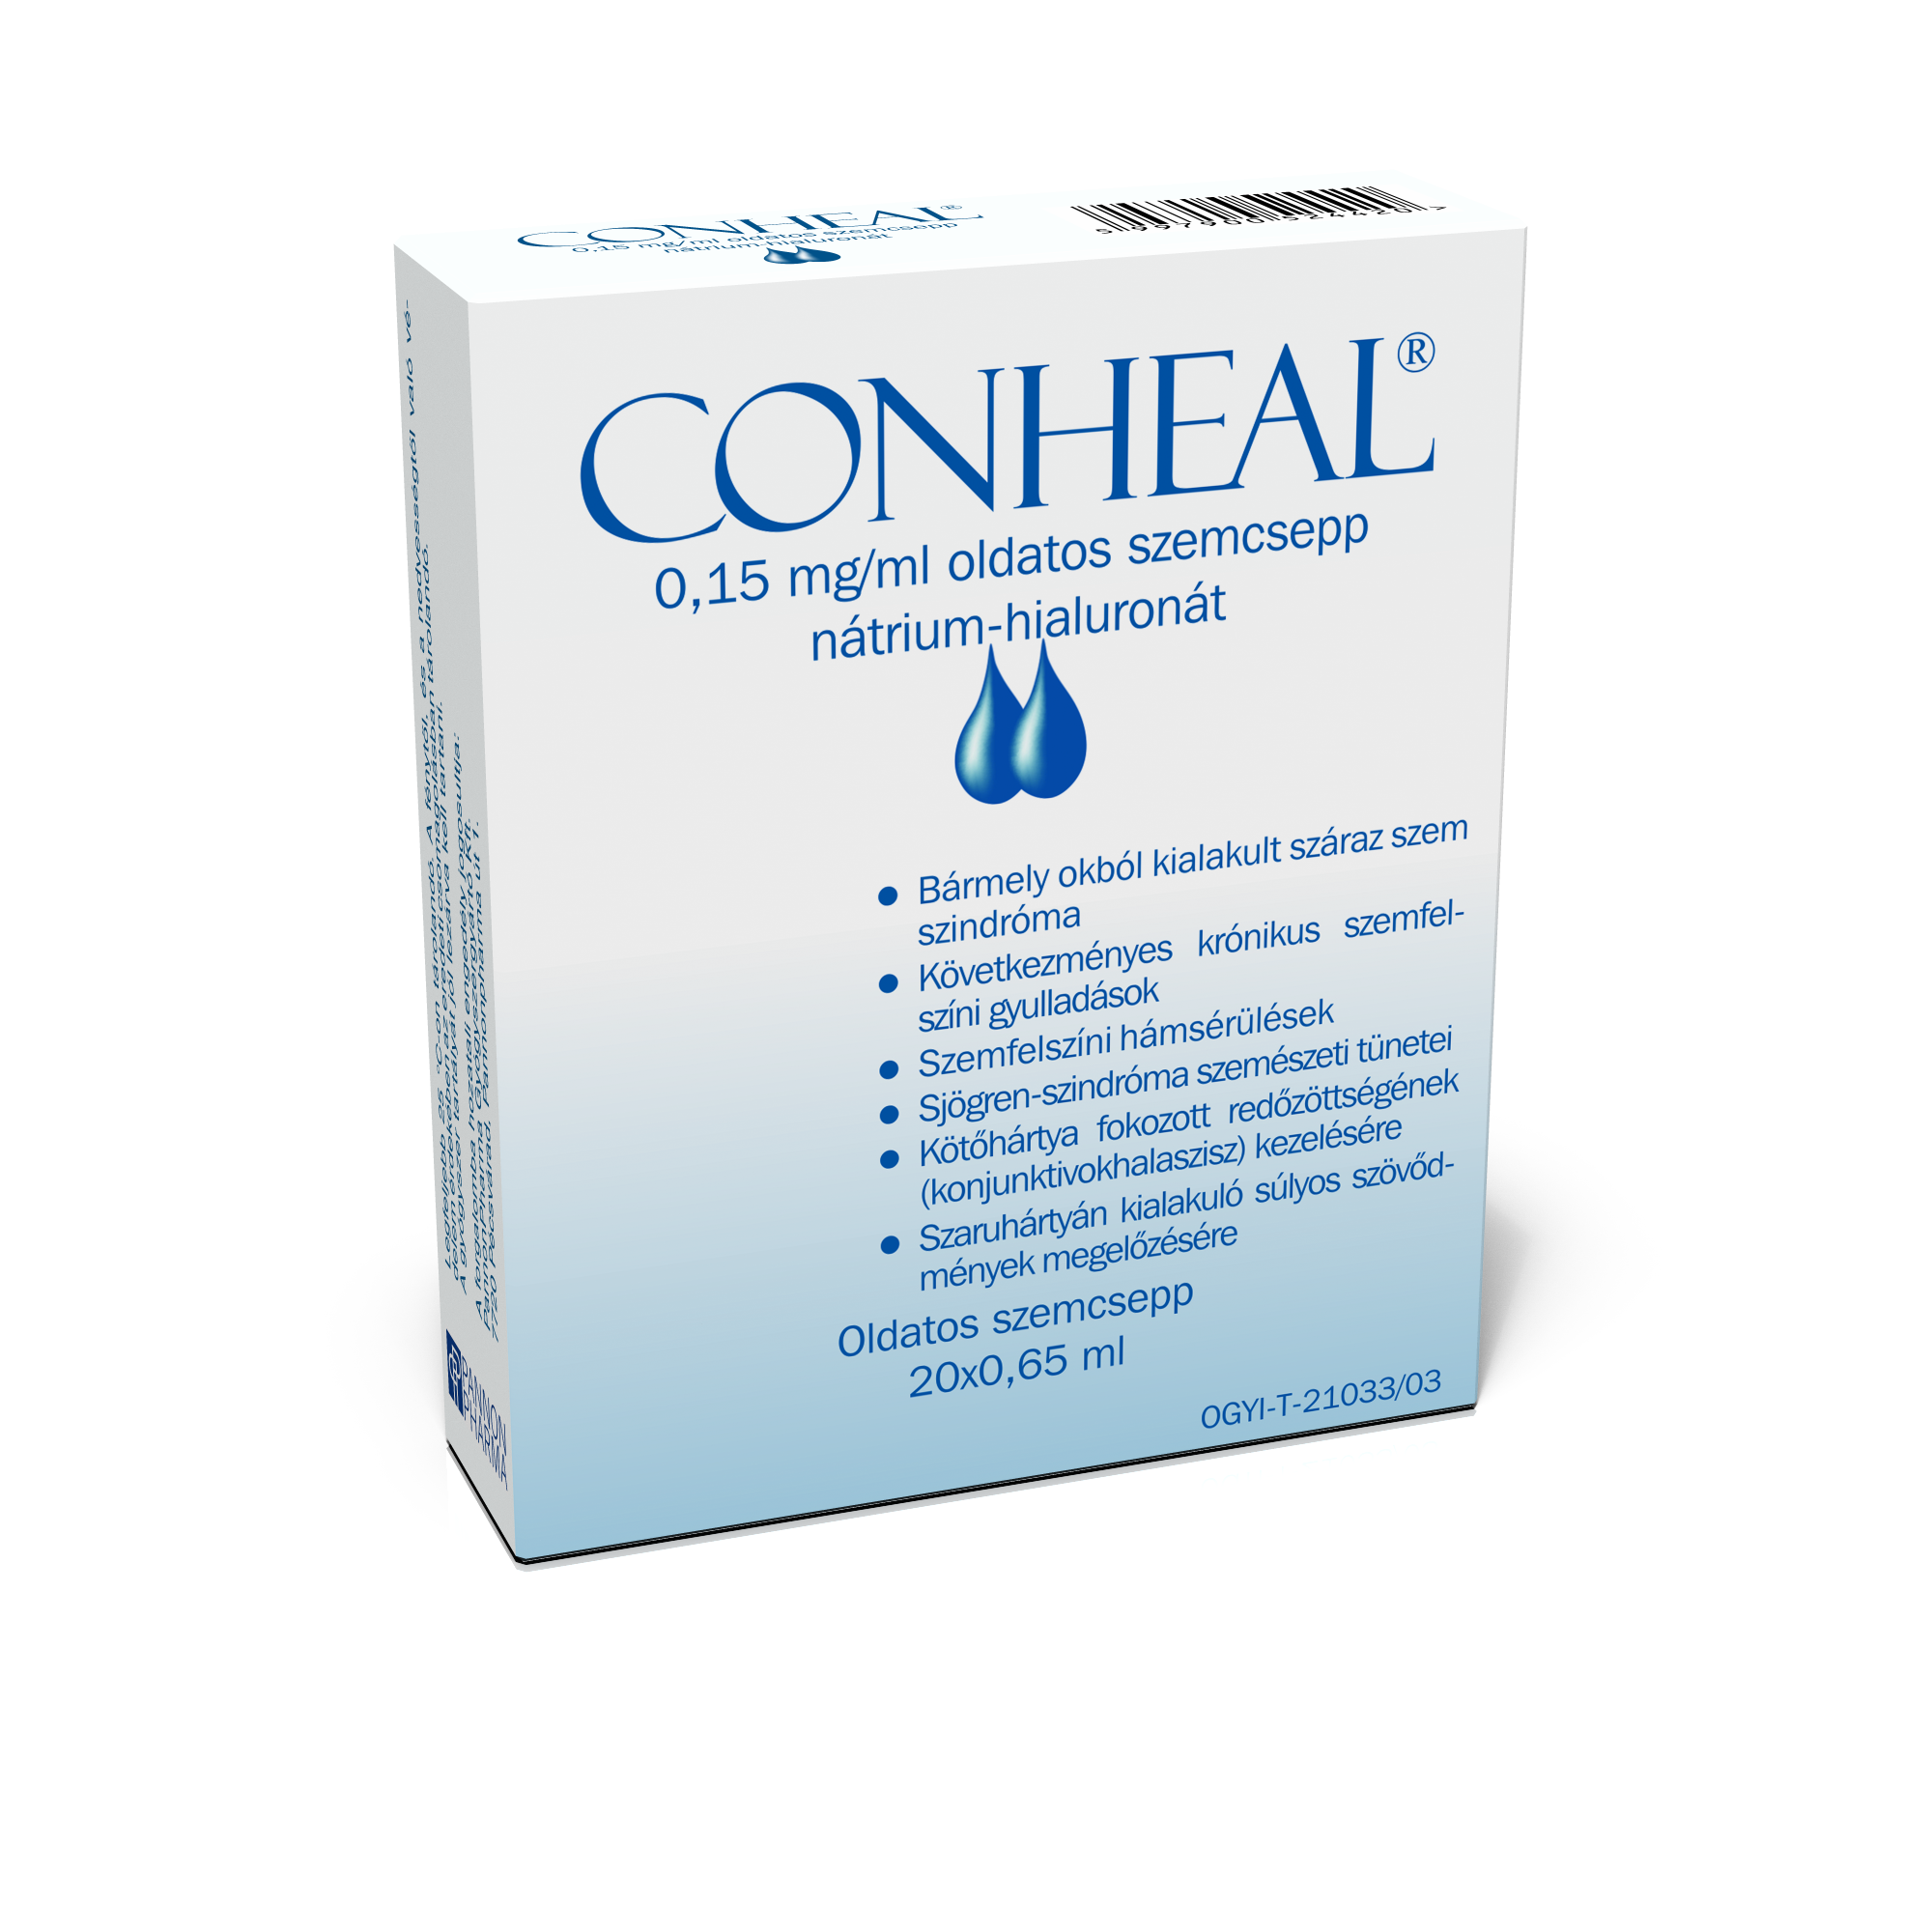 Conheal 0,15 mg/ml oldatos szemcsepp